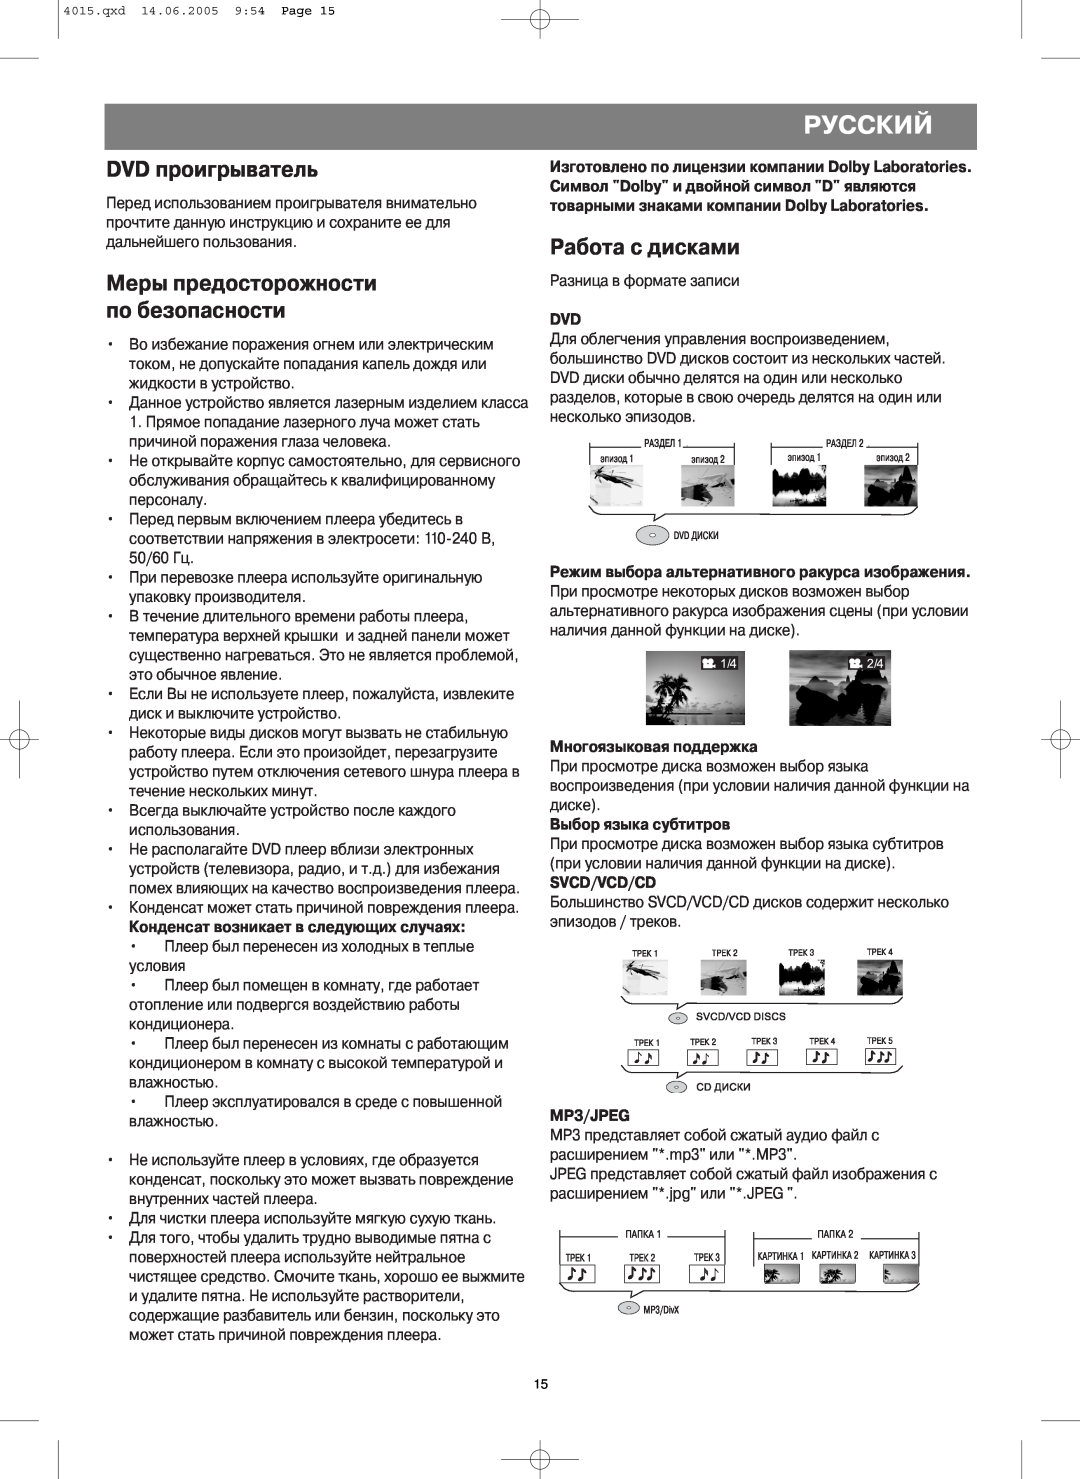 LG Electronics VT 4015 Русский, DVD проигрыватель, Работа с дисками, Меры предосторожности по безопасности 